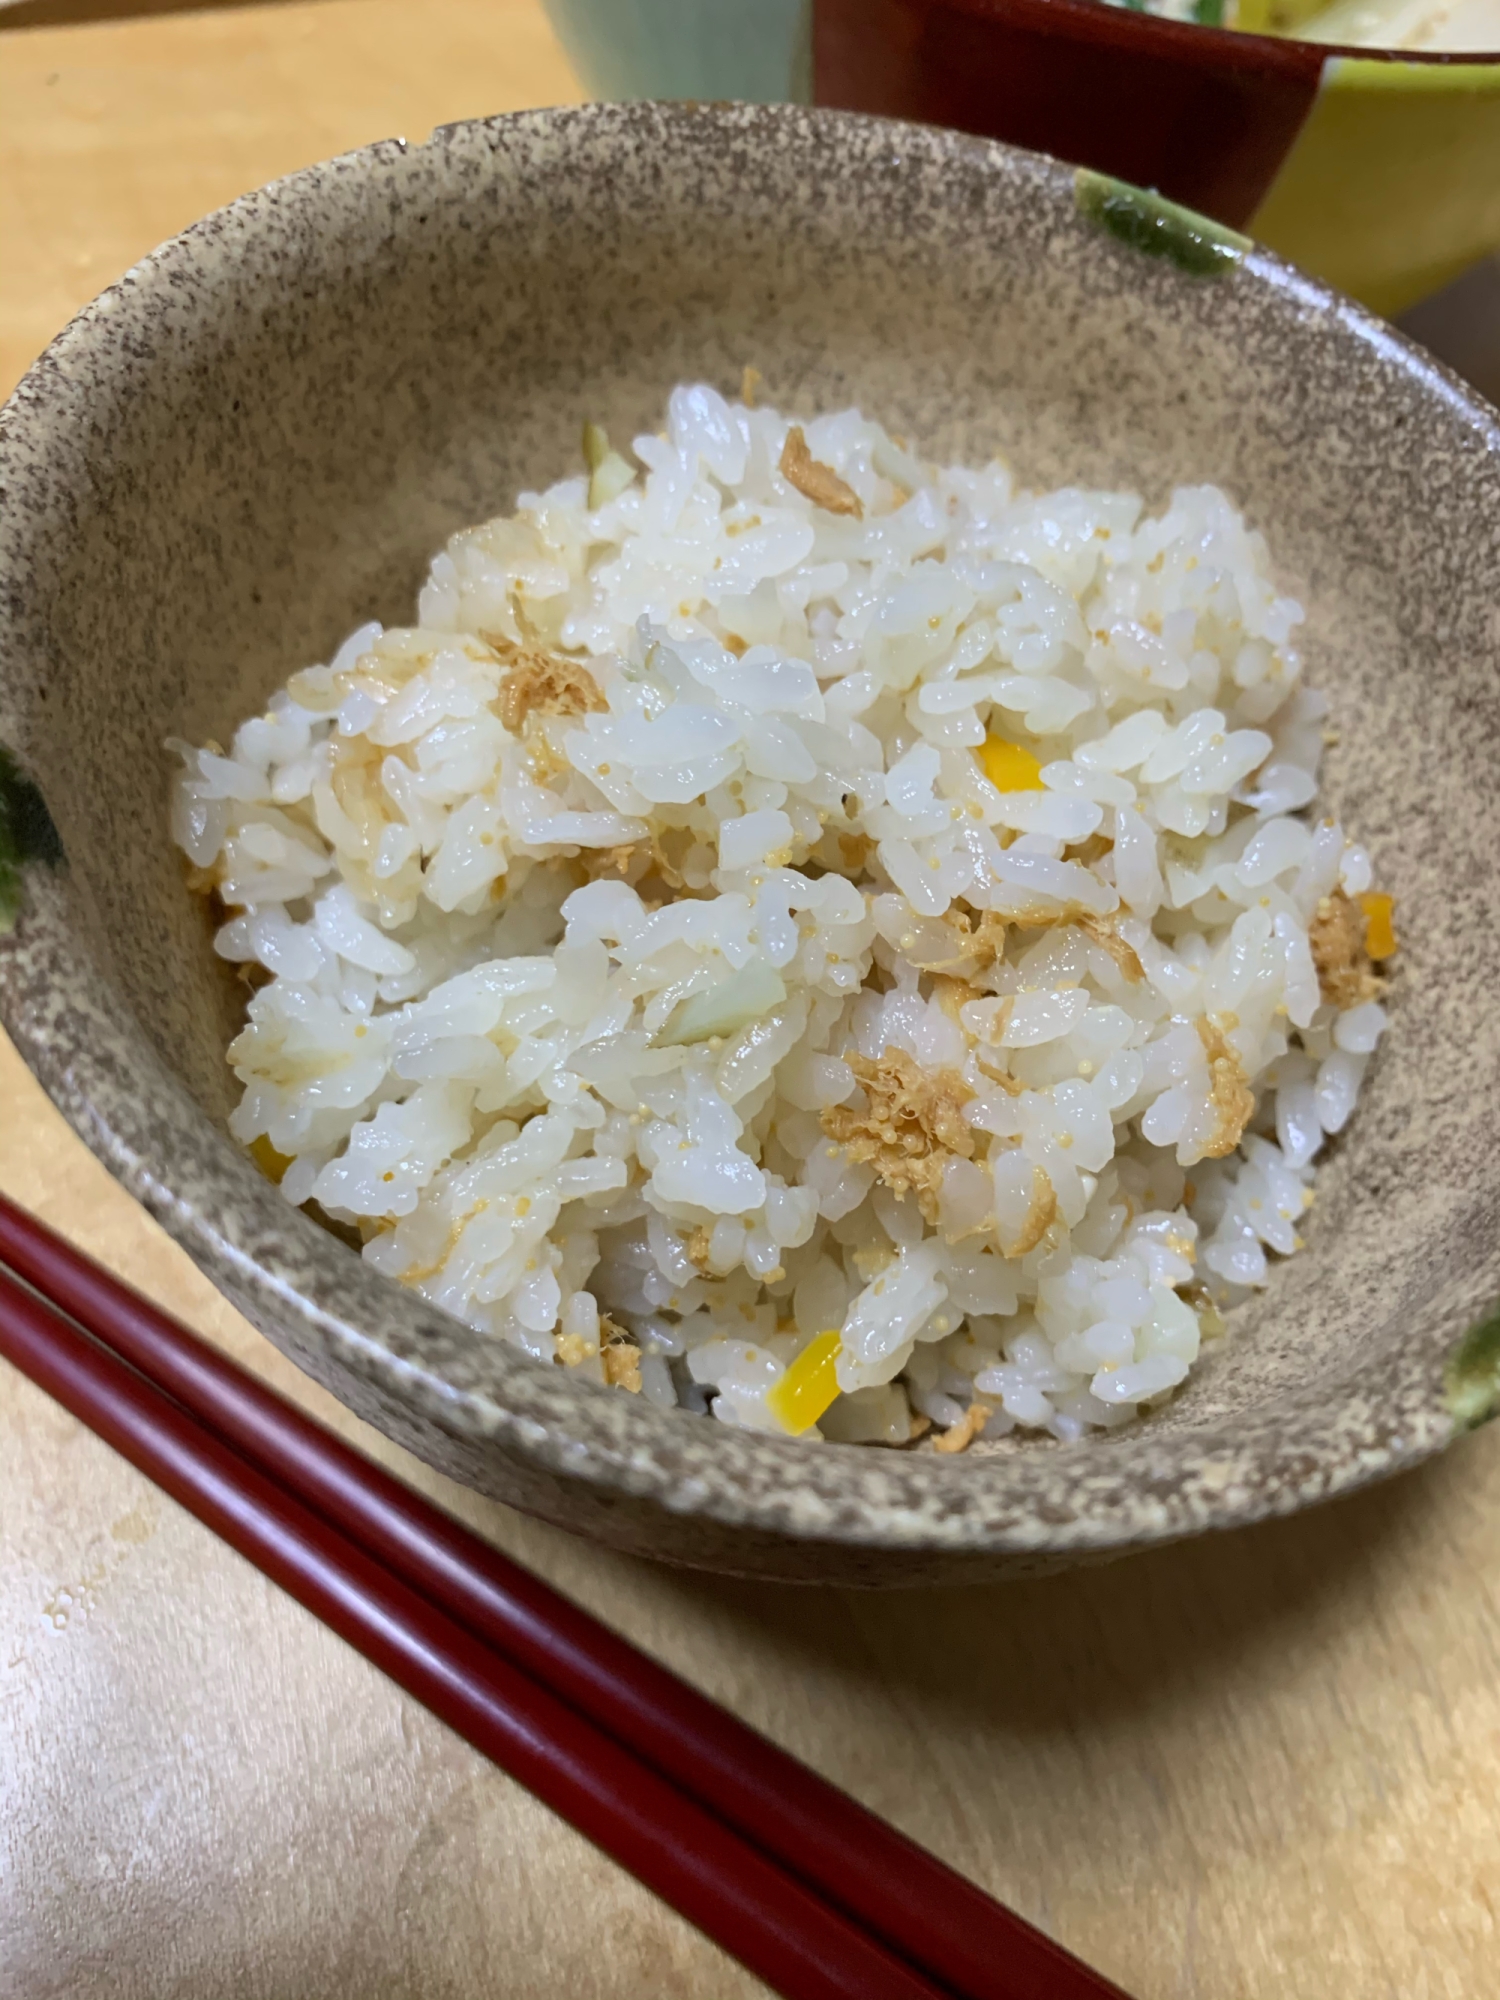 菊芋と鮪の佃煮炊き込みご飯